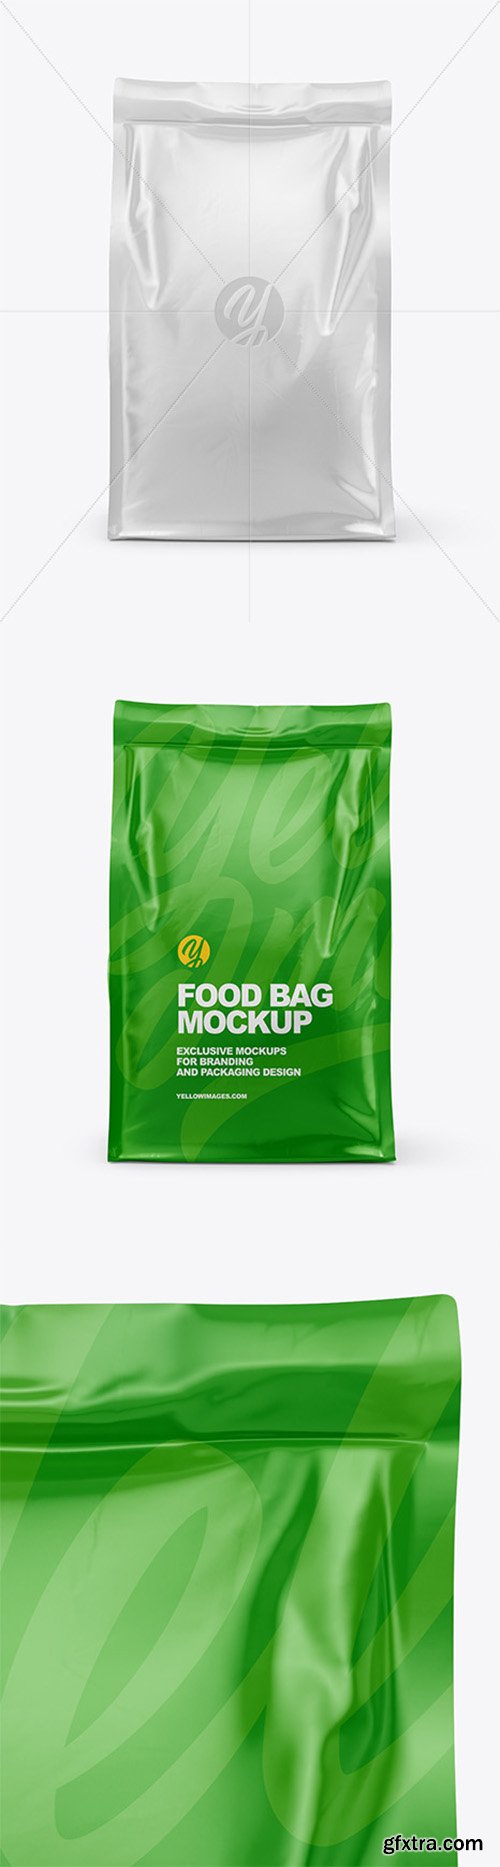 Glossy Food Bag Mockup - Front View 60620